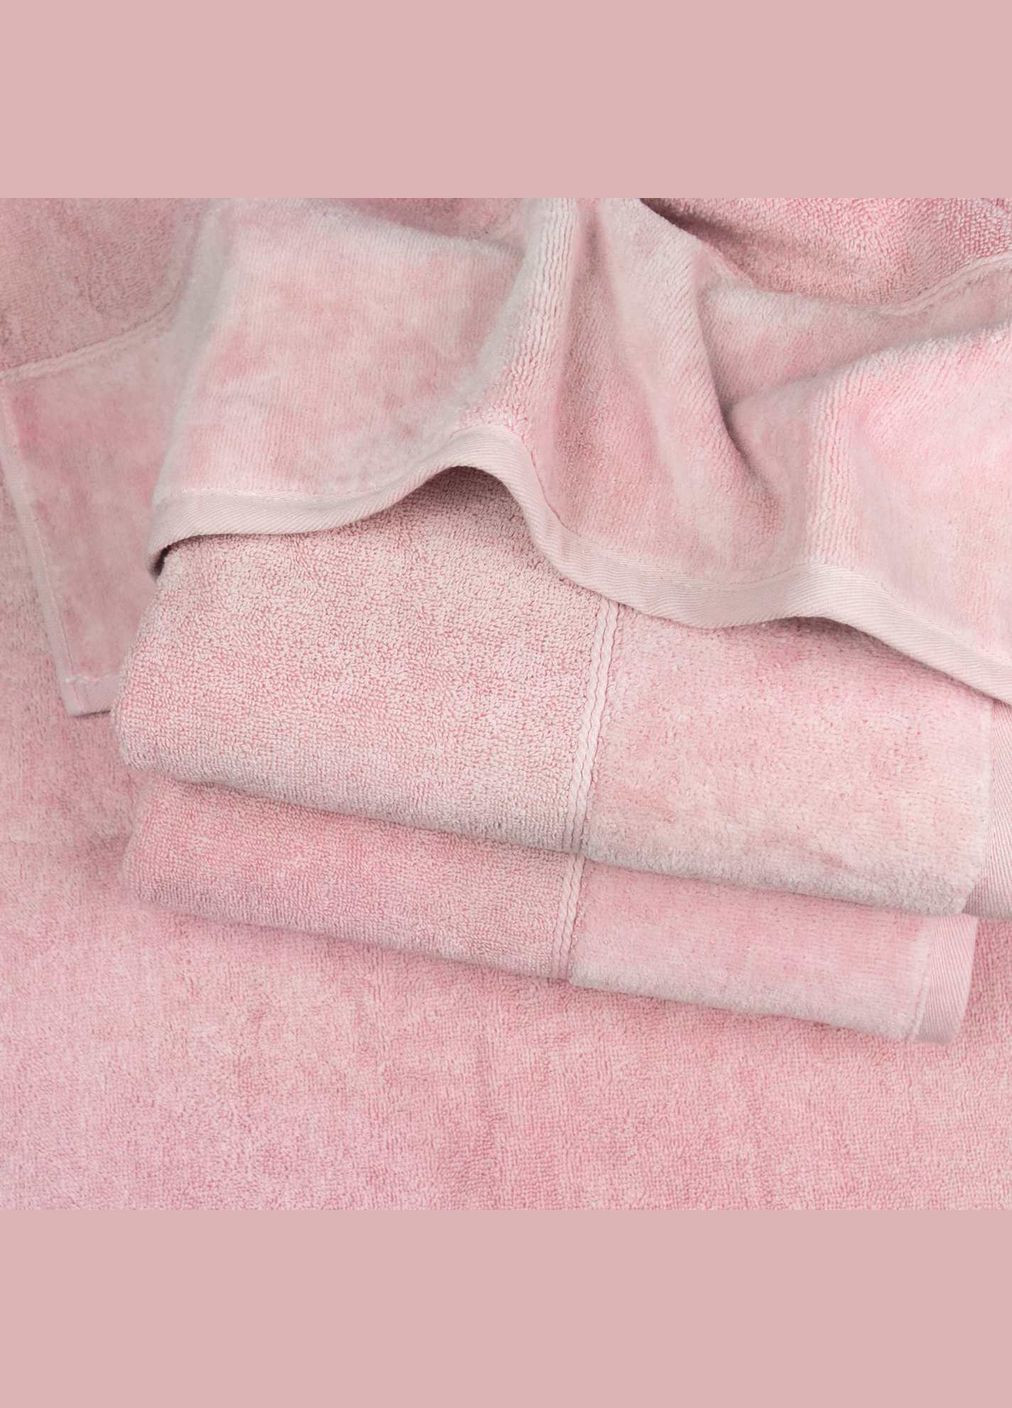 GM Textile рушник для обличчя та рук махра/велюр 40x70см преміум якості milado 550г/м2 (рожевий) рожевий виробництво -